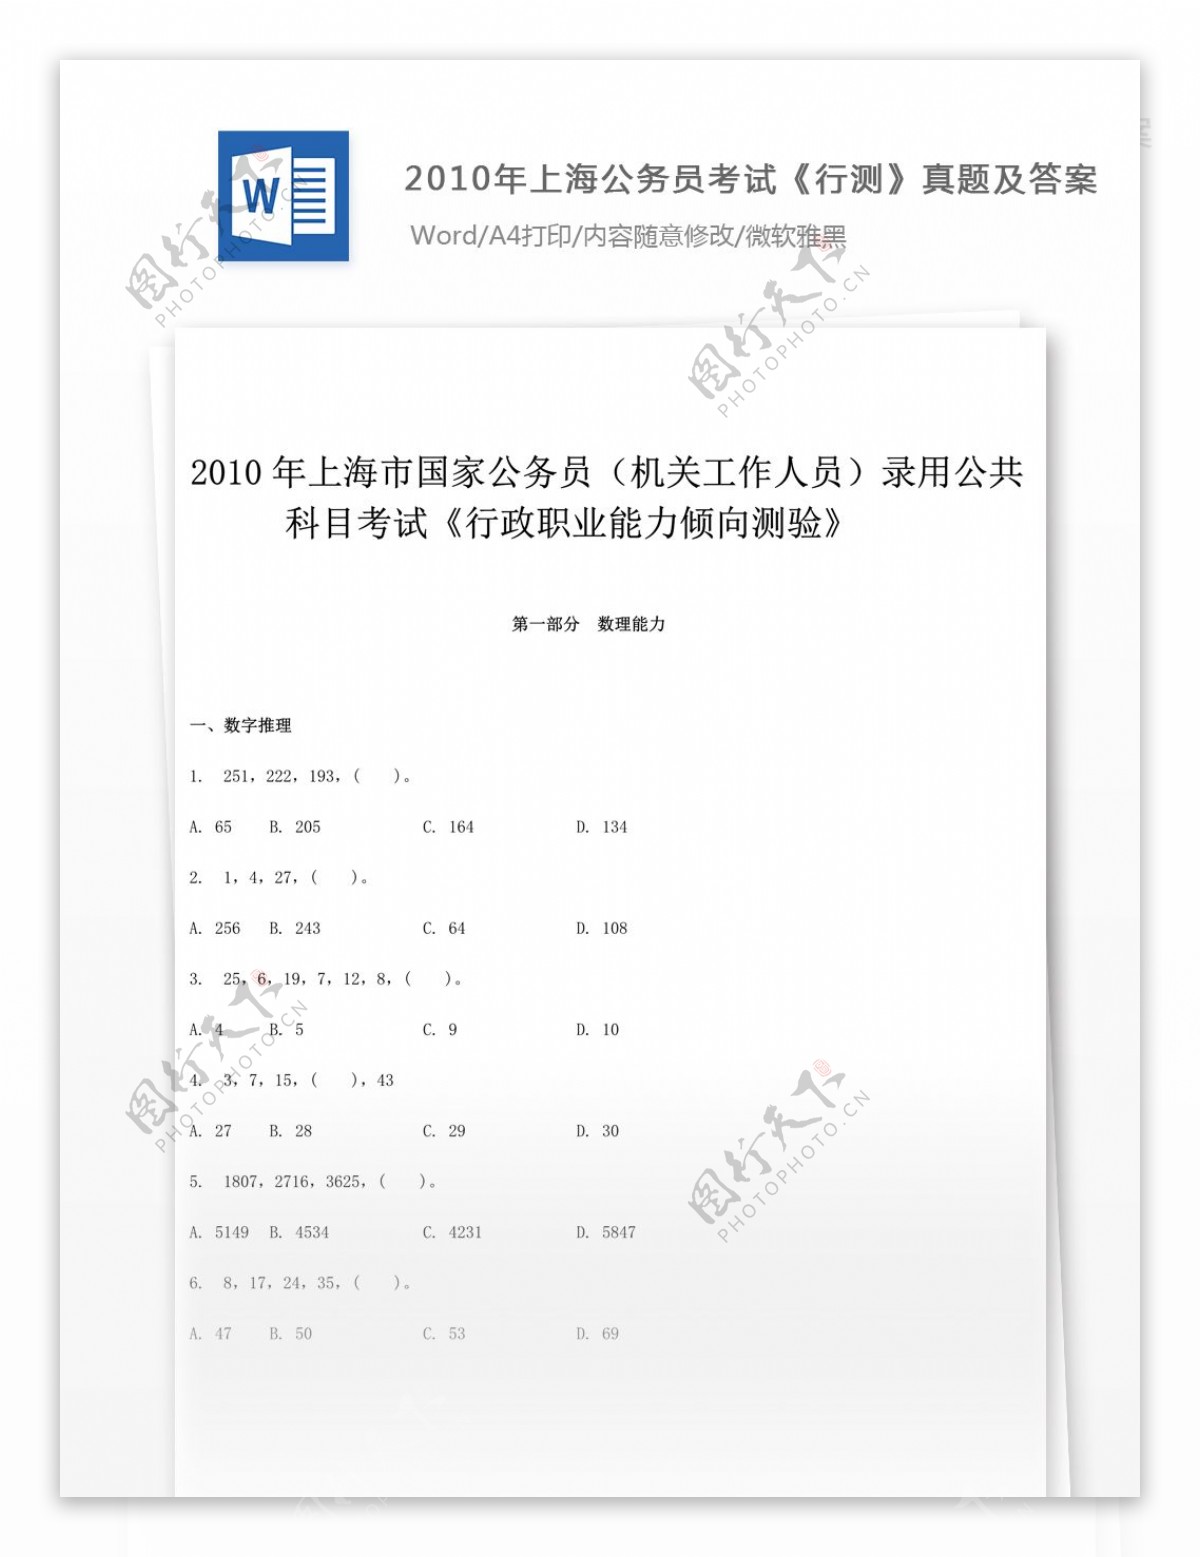 2010上海公务员考试行测真题文库题库